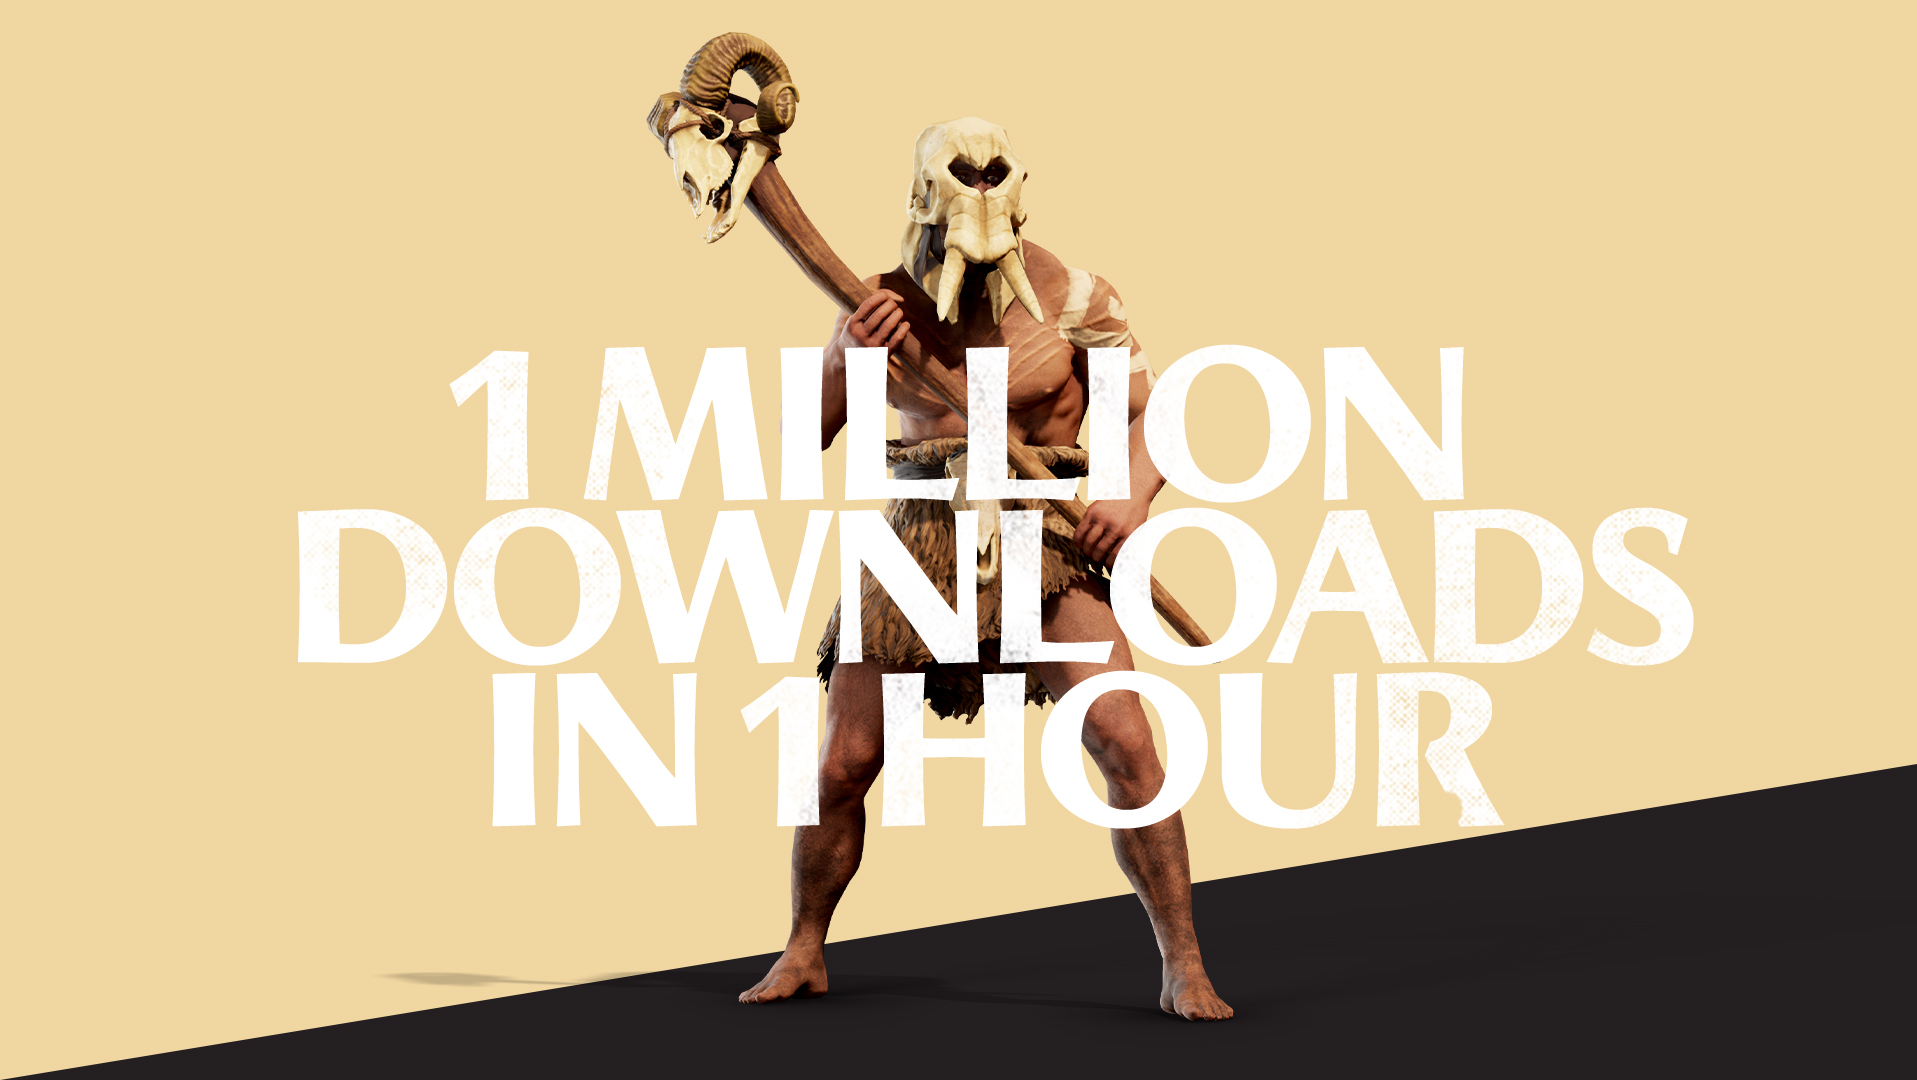 《全战：特洛伊》一小时下载量破百万 欧洲玩家最多